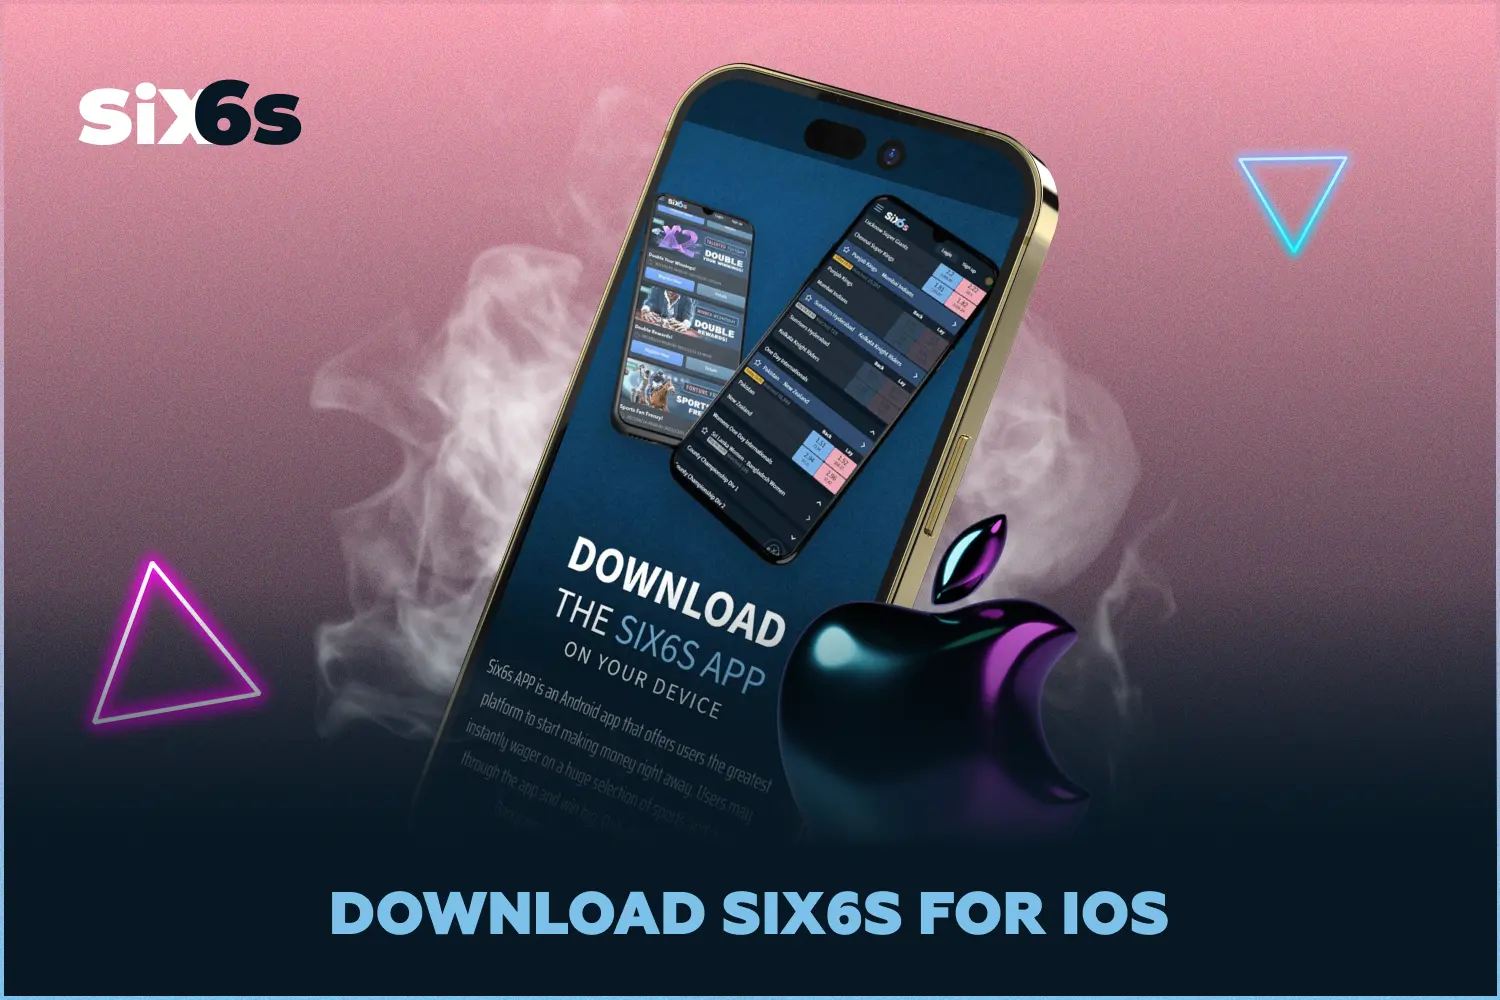 Six6s ऐप्स का iOS संस्करण फिलहाल उपलब्ध नहीं है, लेकिन उपयोगकर्ता किसी भी स्मार्टफोन ब्राउज़र से Six6s मोबाइल साइट का उपयोग कर सकते हैं